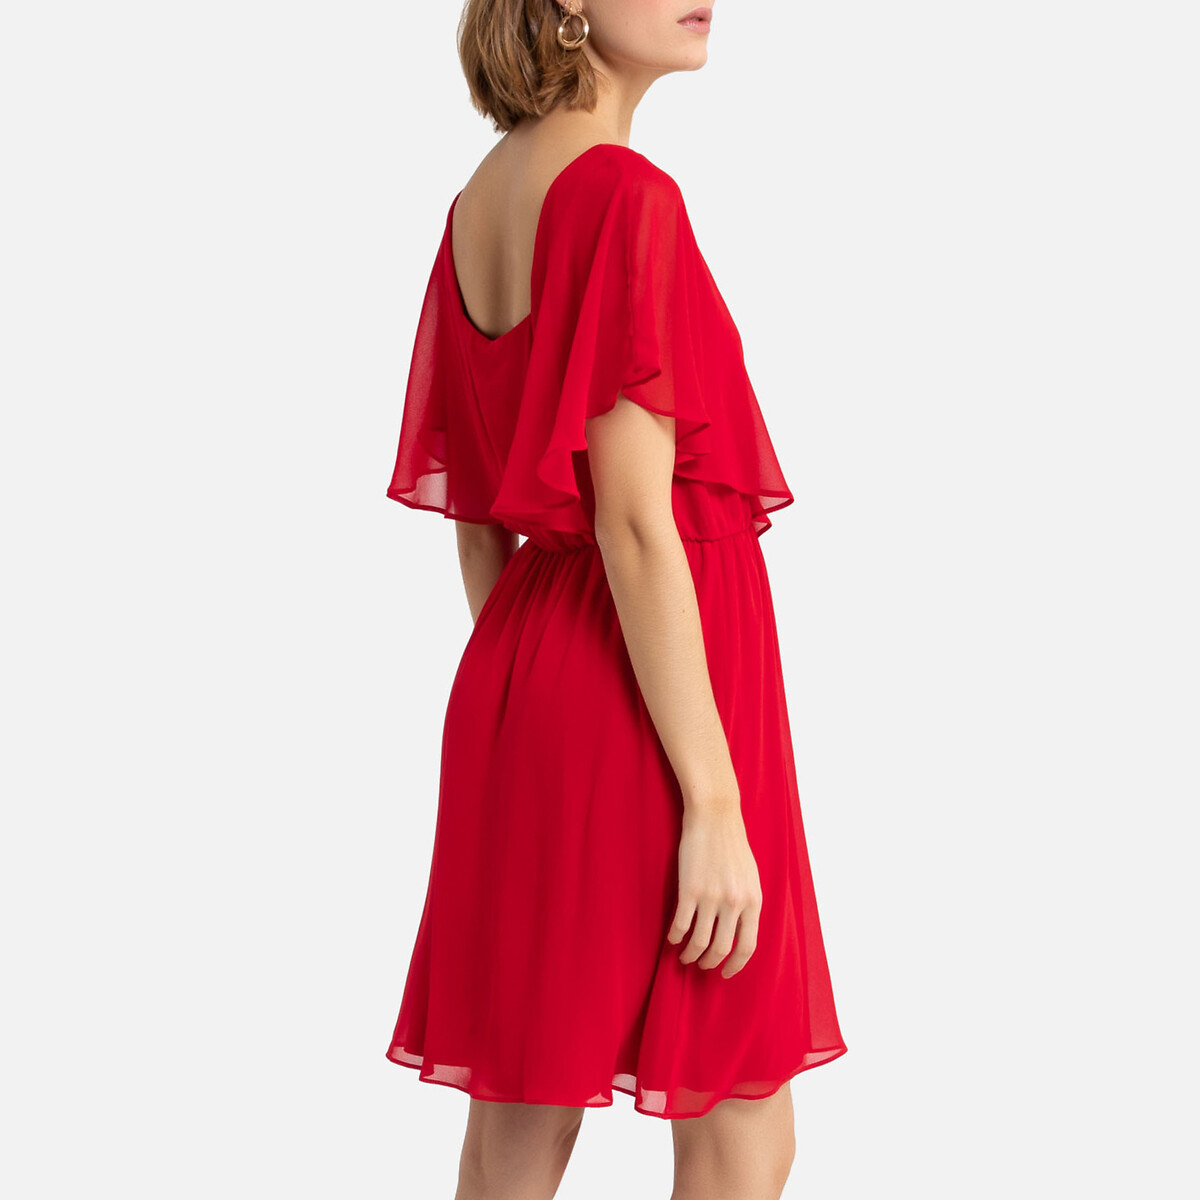 Платье LaRedoute Укороченное с V-образным вырезом 42 (FR) - 48 (RUS) красный, размер 42 (FR) - 48 (RUS) Укороченное с V-образным вырезом 42 (FR) - 48 (RUS) красный - фото 4